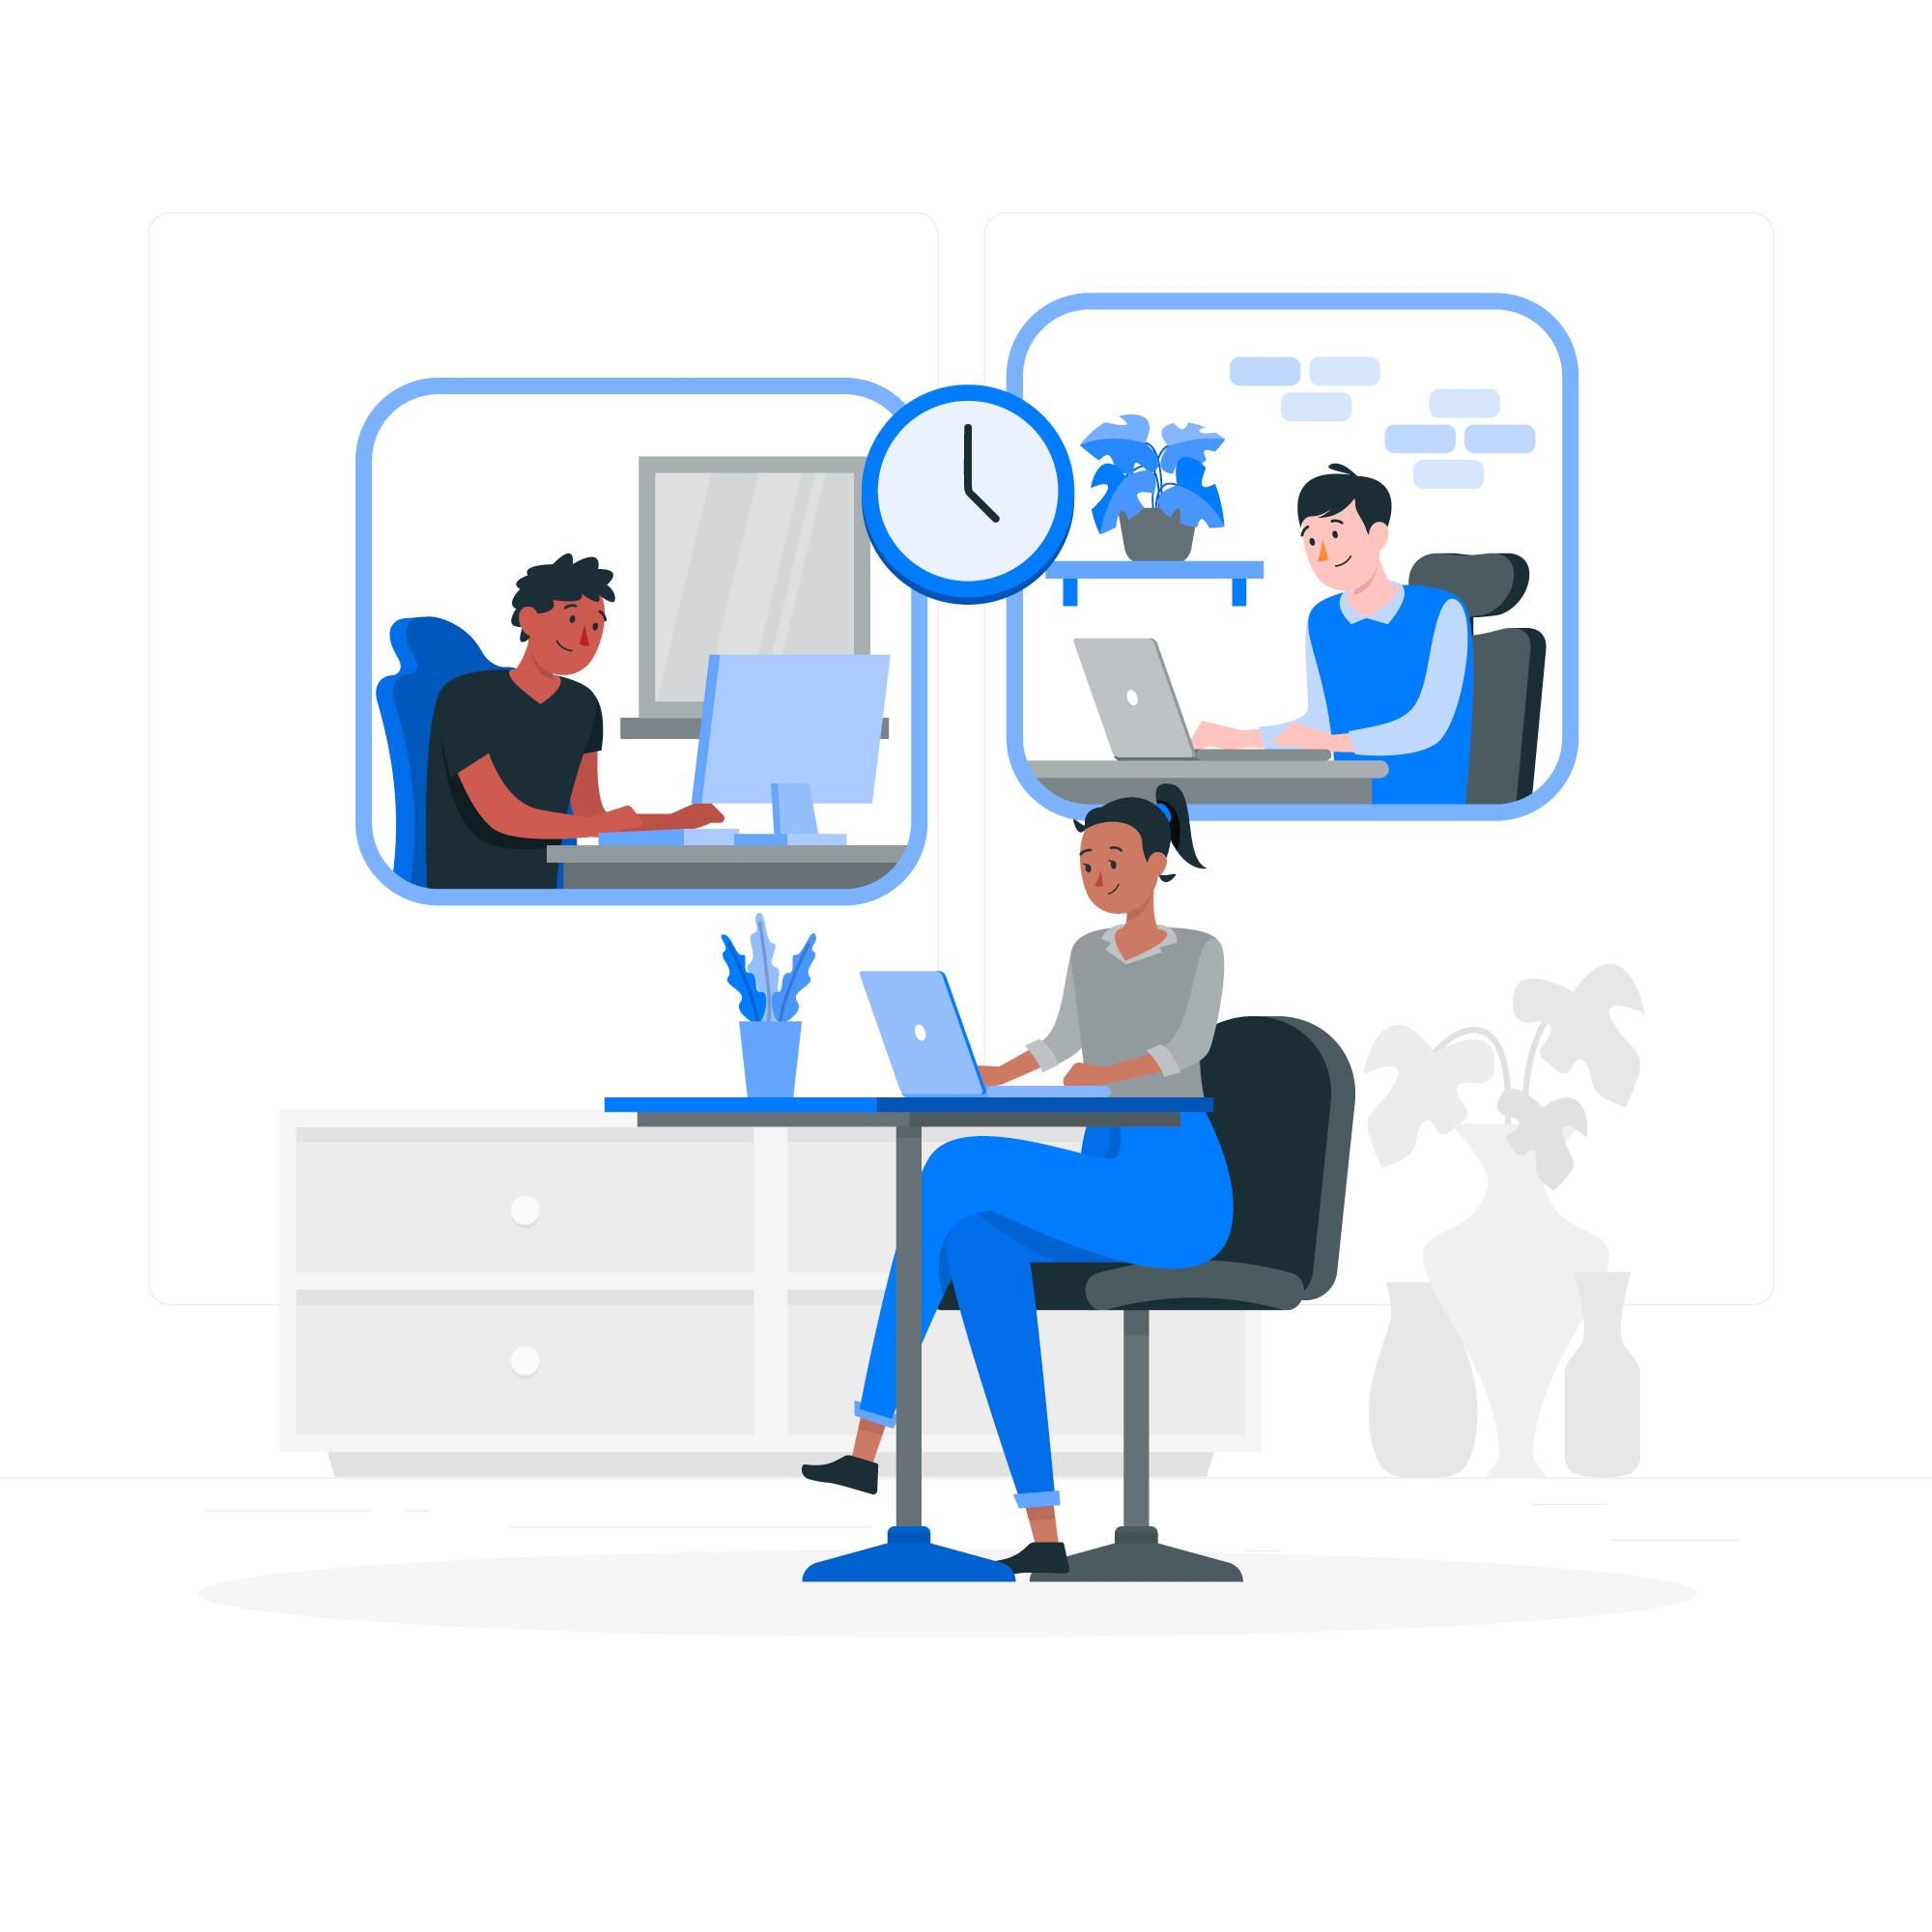 Dibujo de un entorno de oficina virtual donde trabajan diferentes compañeros en remoto, conectándose desde multidispositivos.